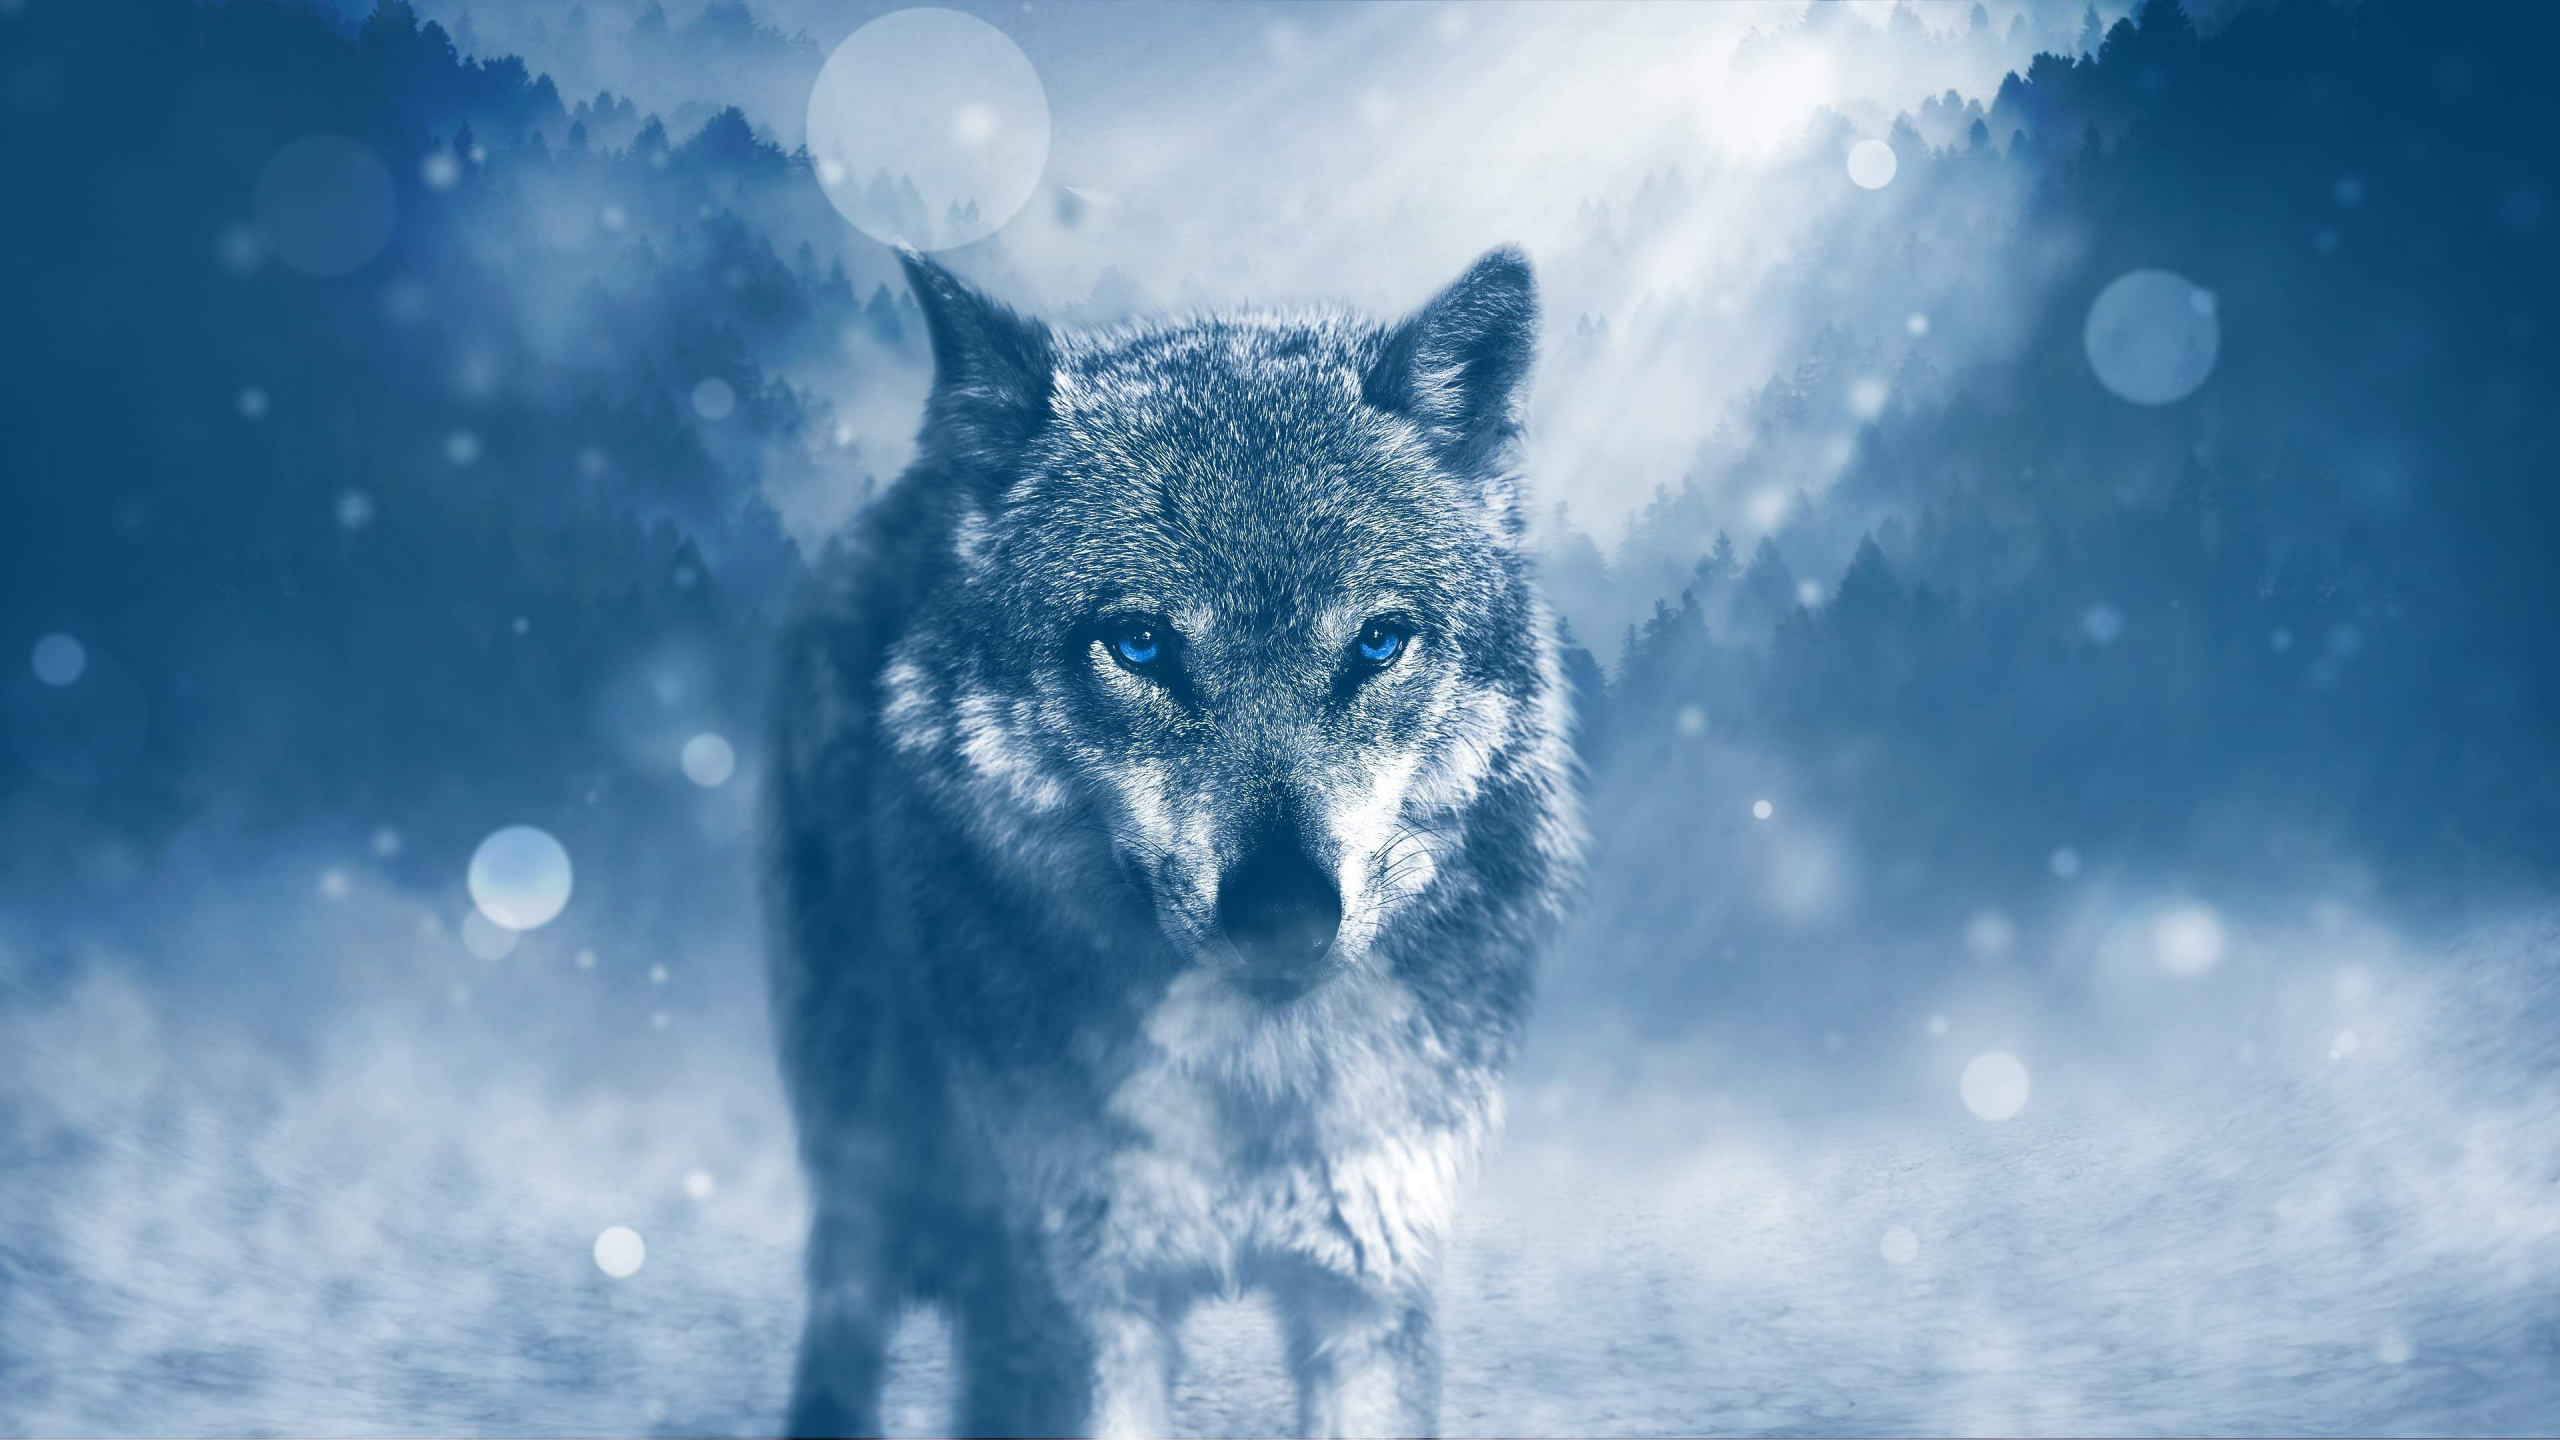 Grauer Wolf Auf Schneebedecktem Boden. Wallpaper in 2560x1440 Resolution